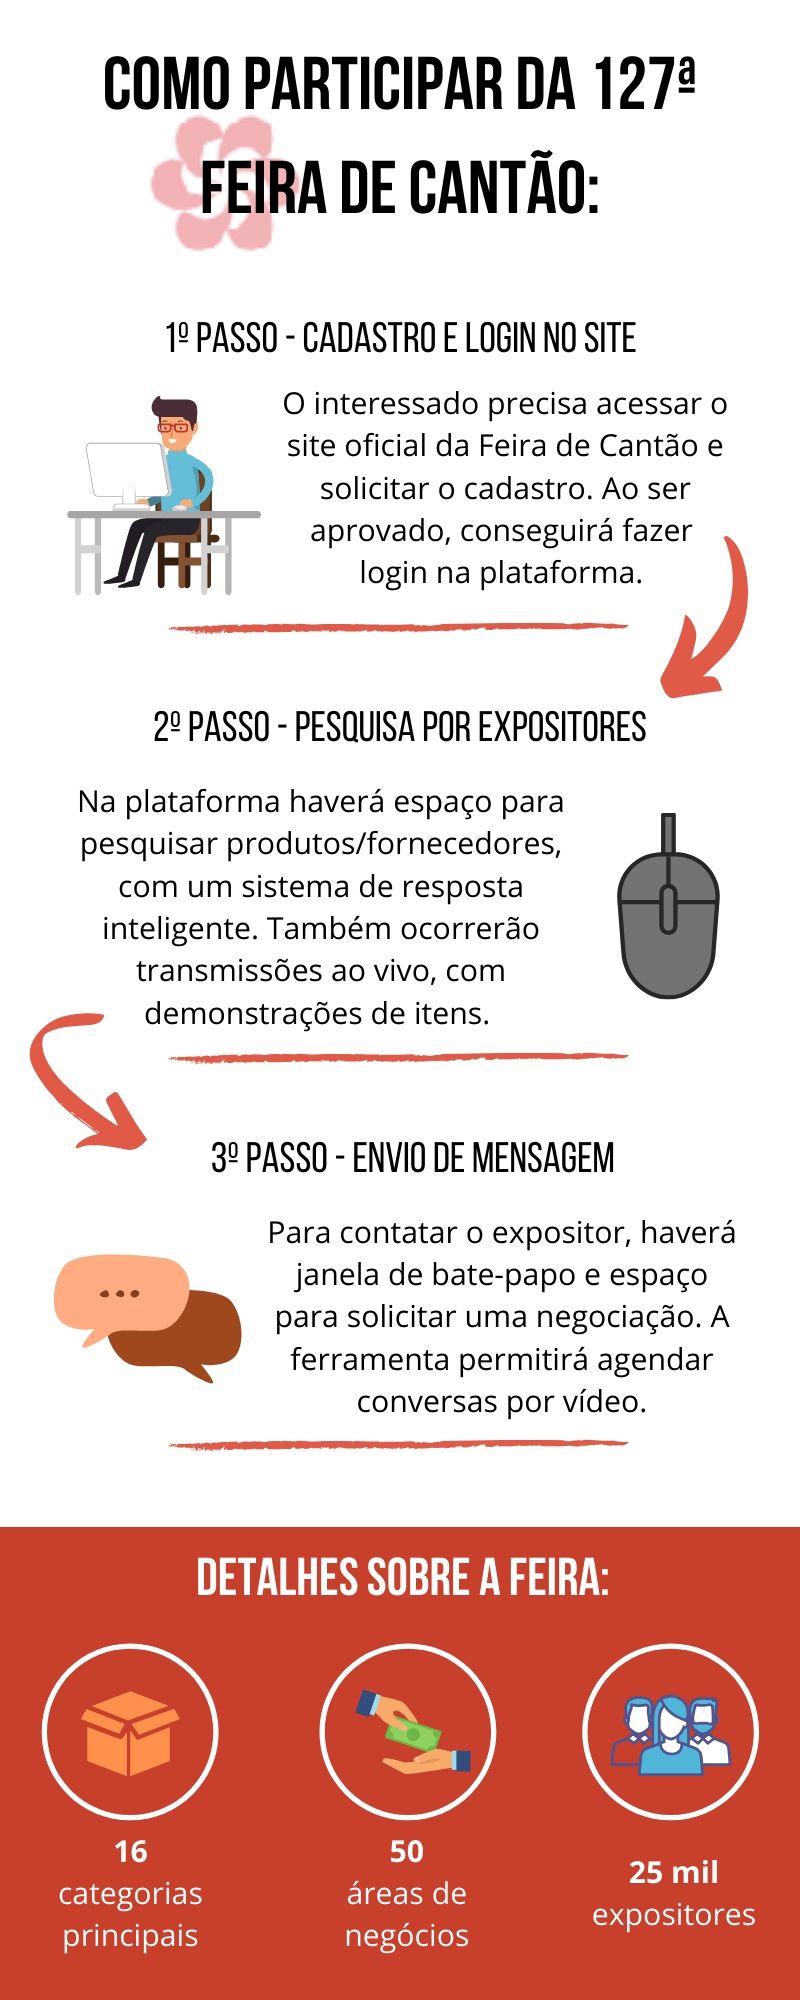 Feira de Cantão guia reúne informações sobre edição on-line_OMDN_O Mundo dos Negócios_Infográfico